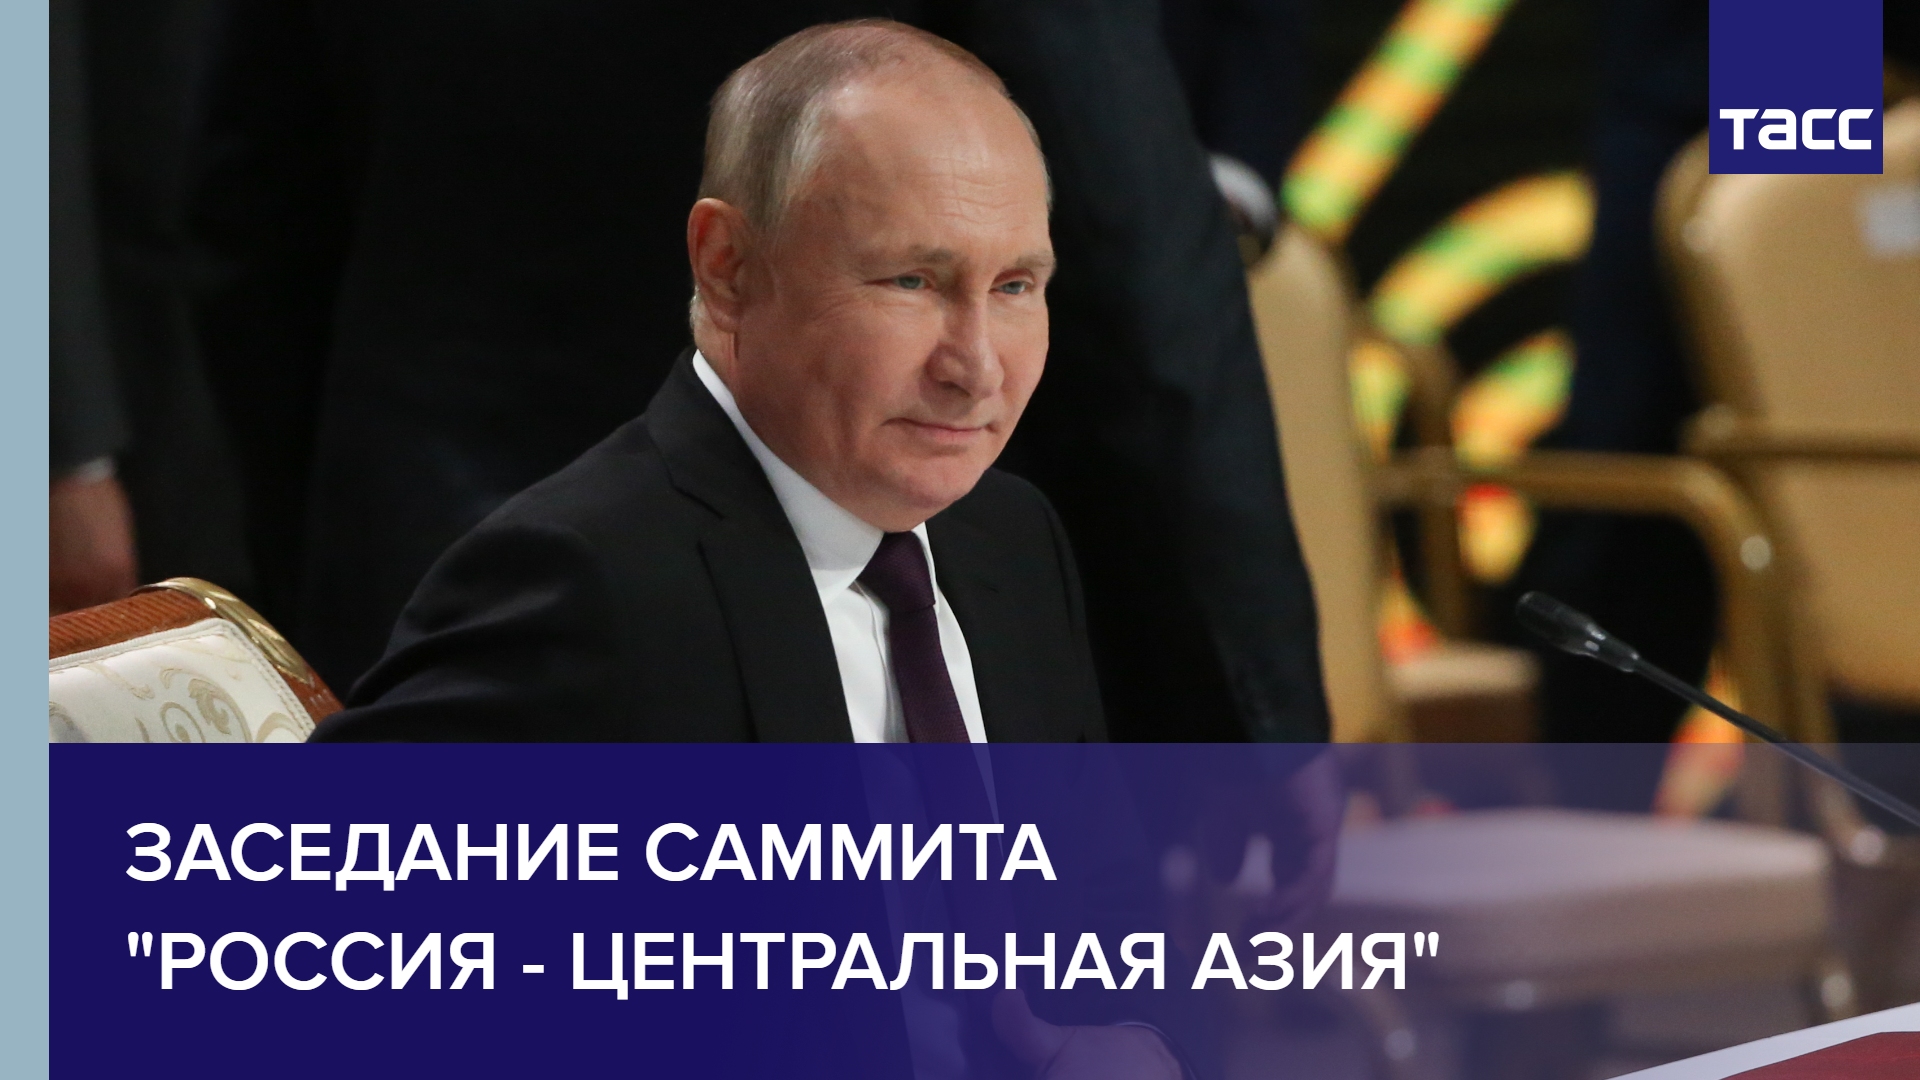 Заседание саммита "Россия - Центральная Азия"